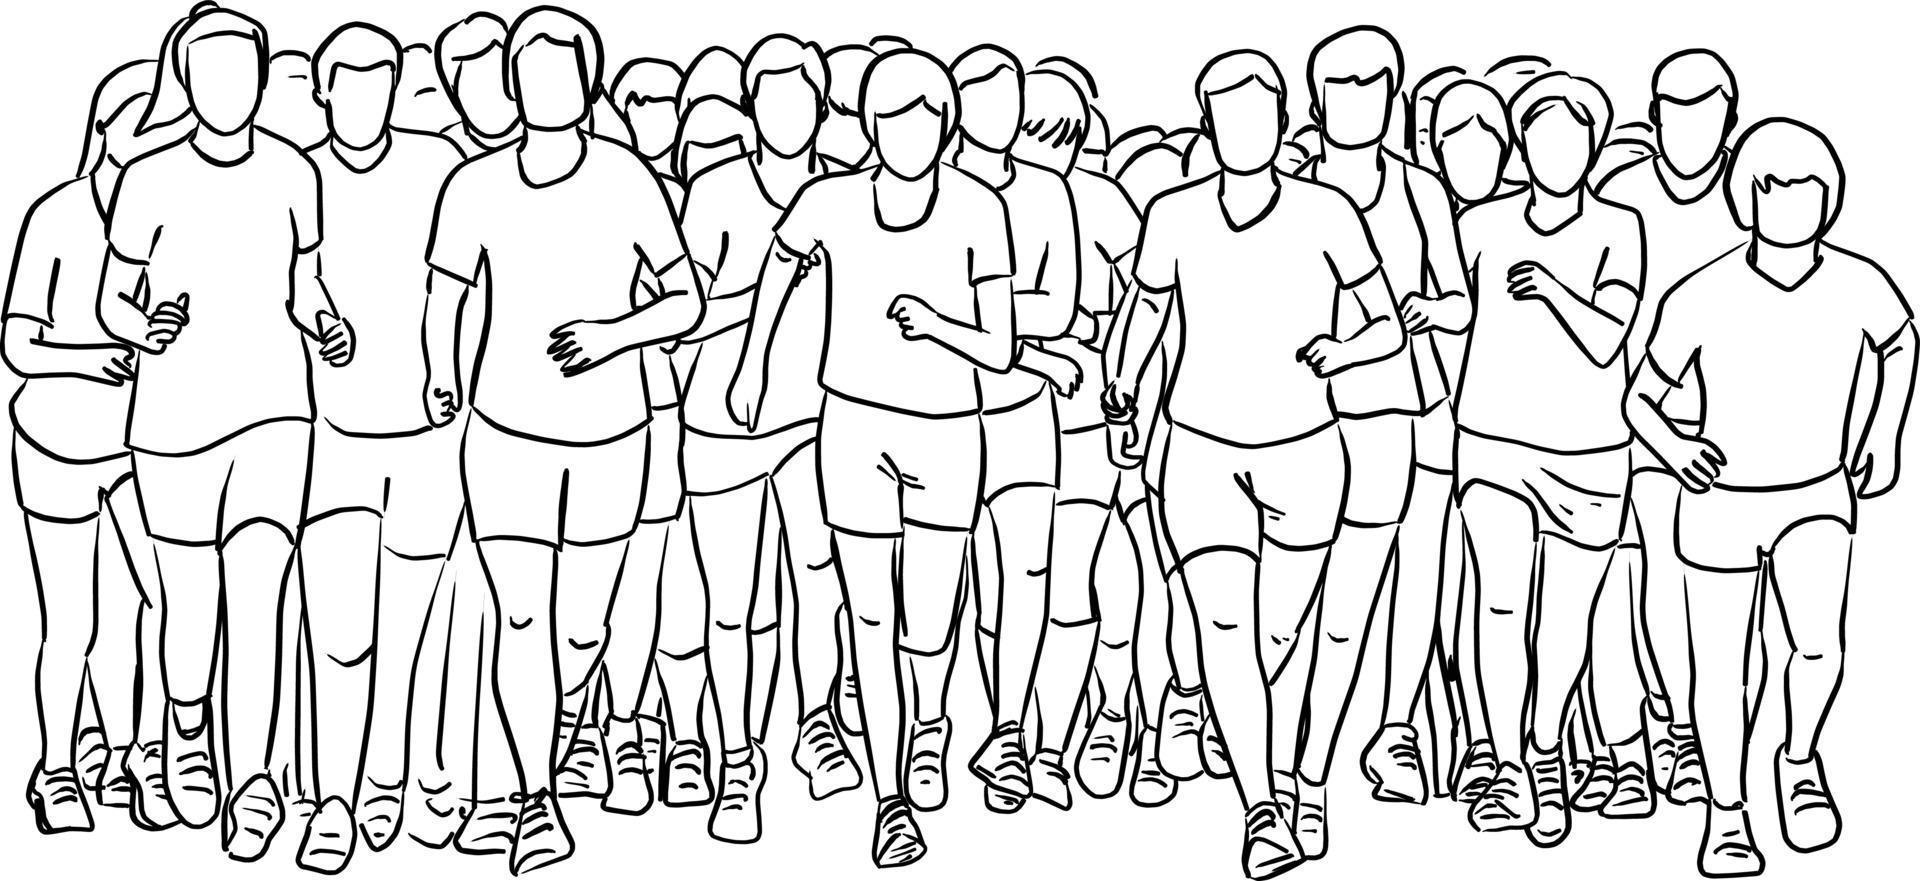 people running together vector illustration sketch